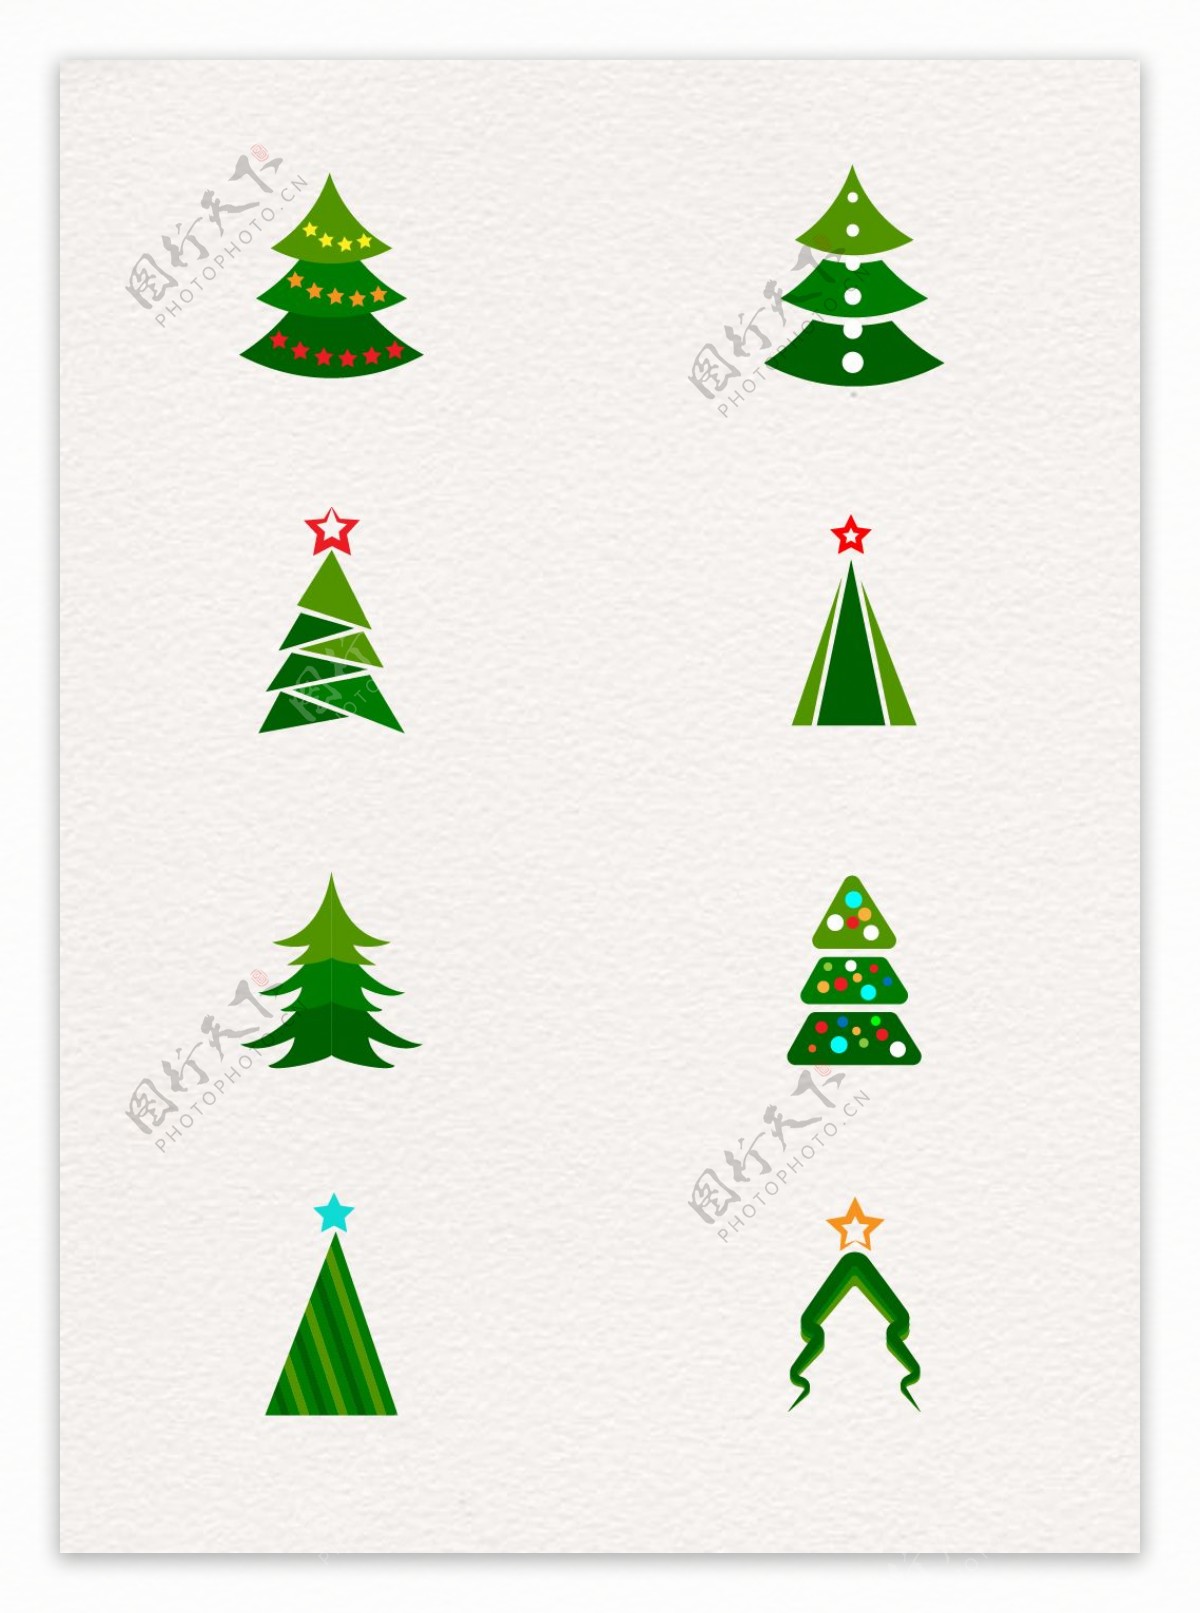 简洁圣诞树扁平素材设计